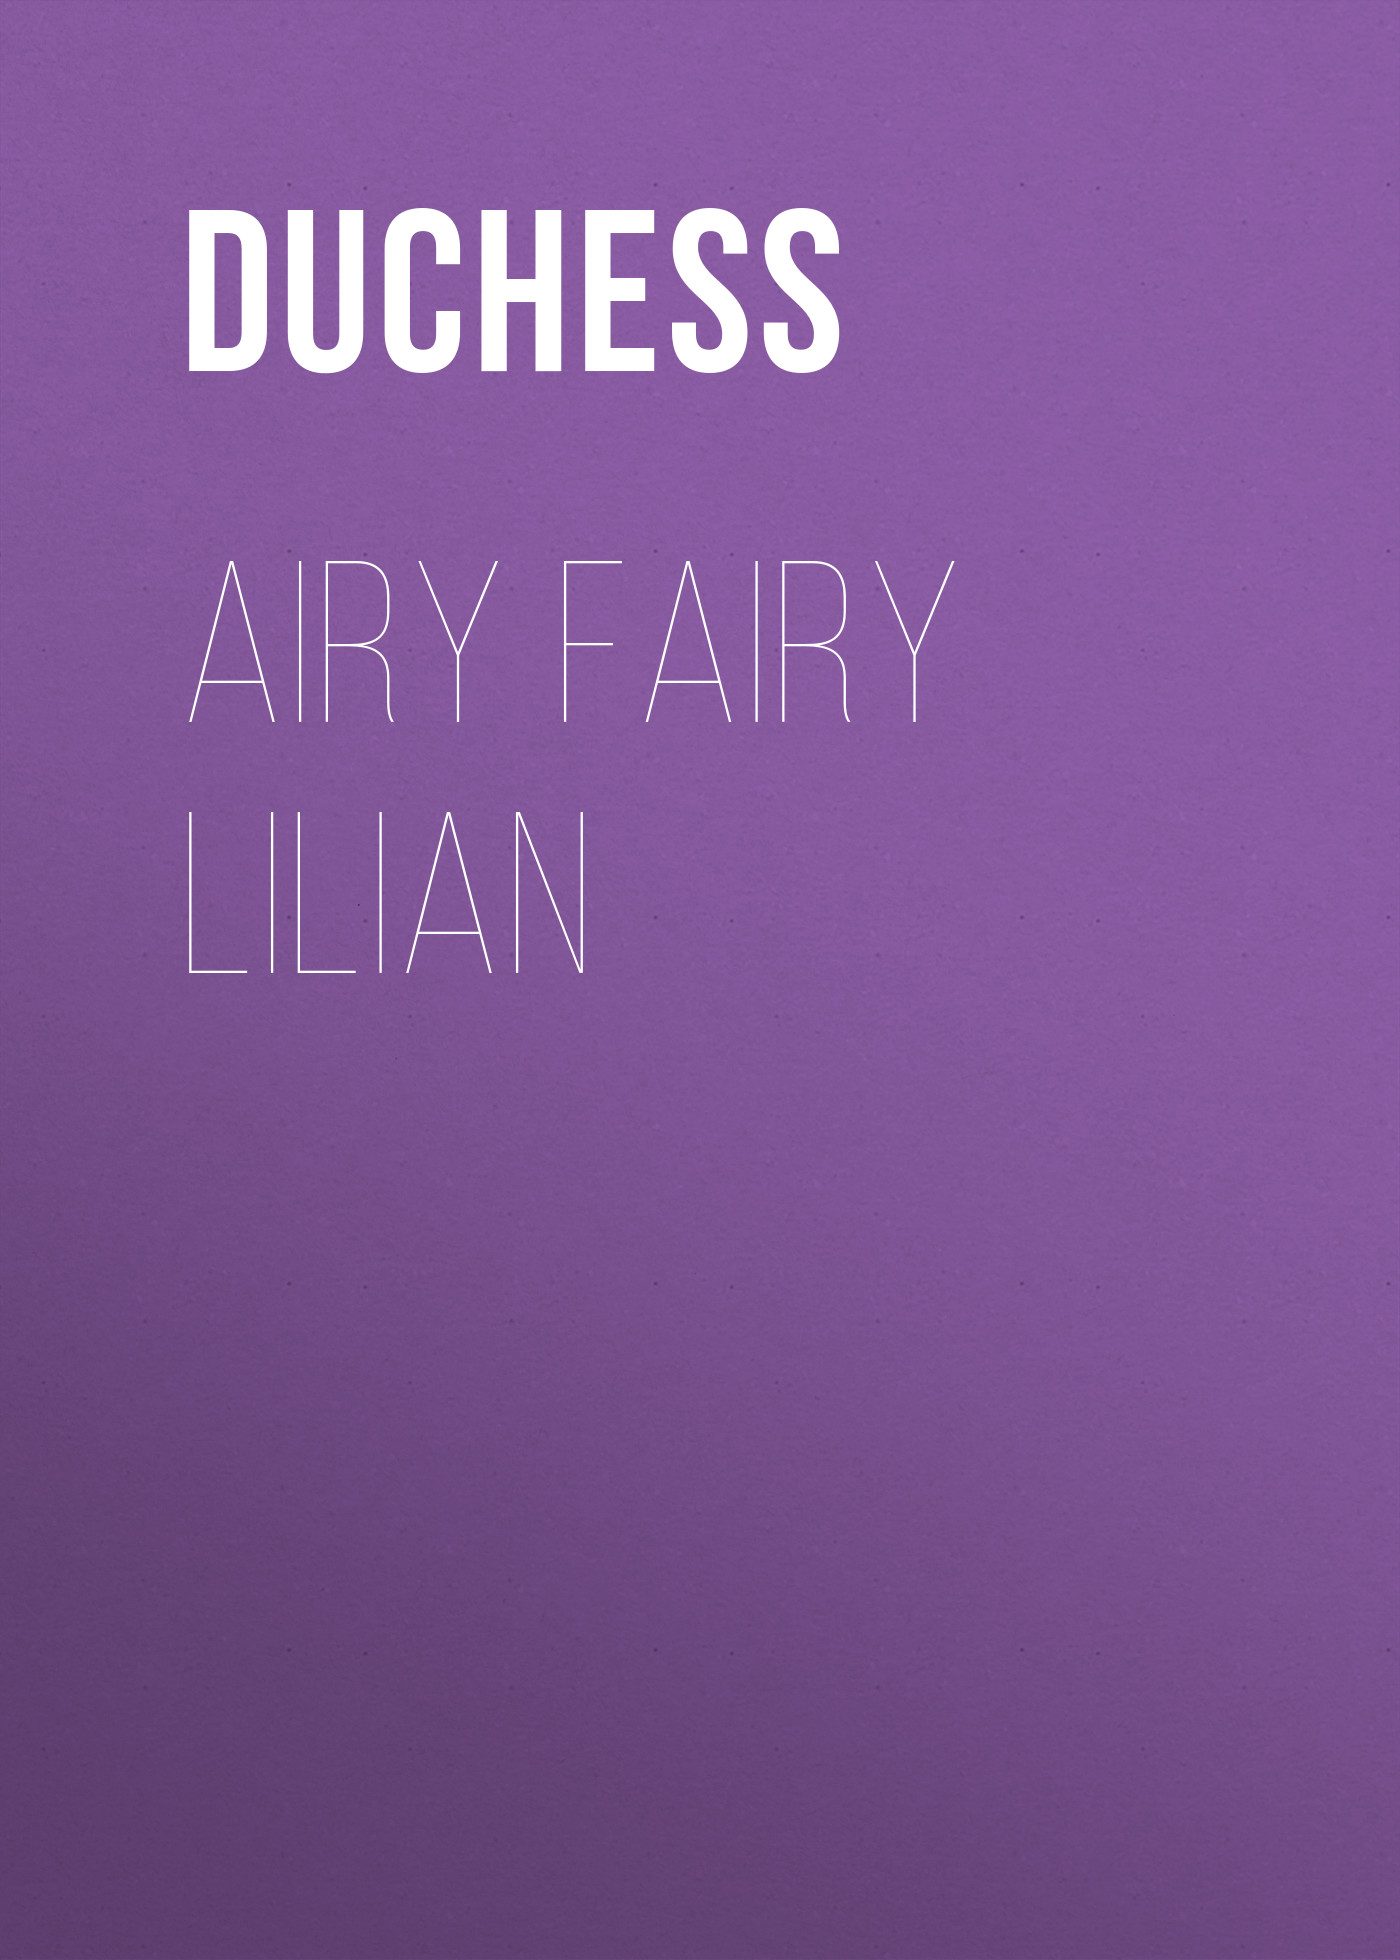 Книга Airy Fairy Lilian из серии , созданная  Duchess, может относится к жанру Зарубежная старинная литература, Зарубежная классика. Стоимость электронной книги Airy Fairy Lilian с идентификатором 24621469 составляет 0 руб.